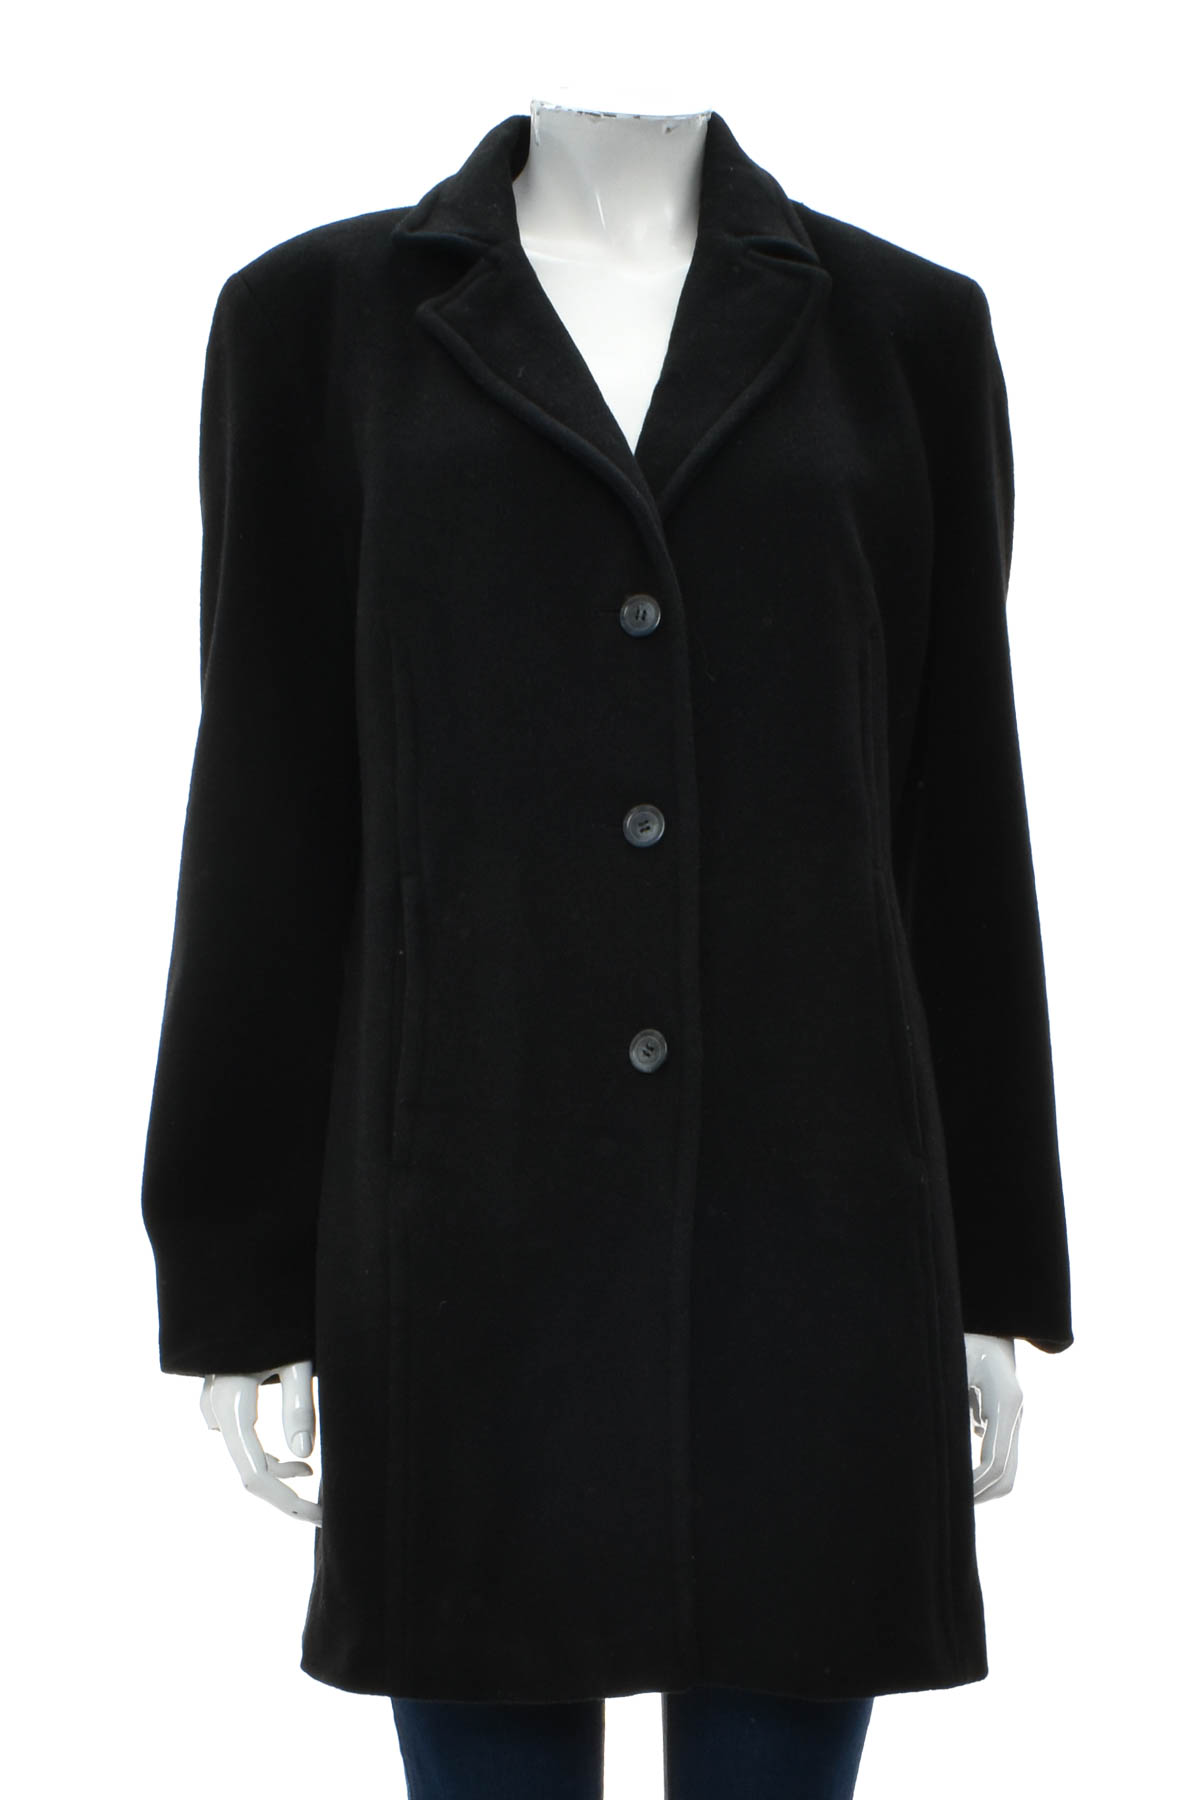 Women's coat - ElleNor - 0